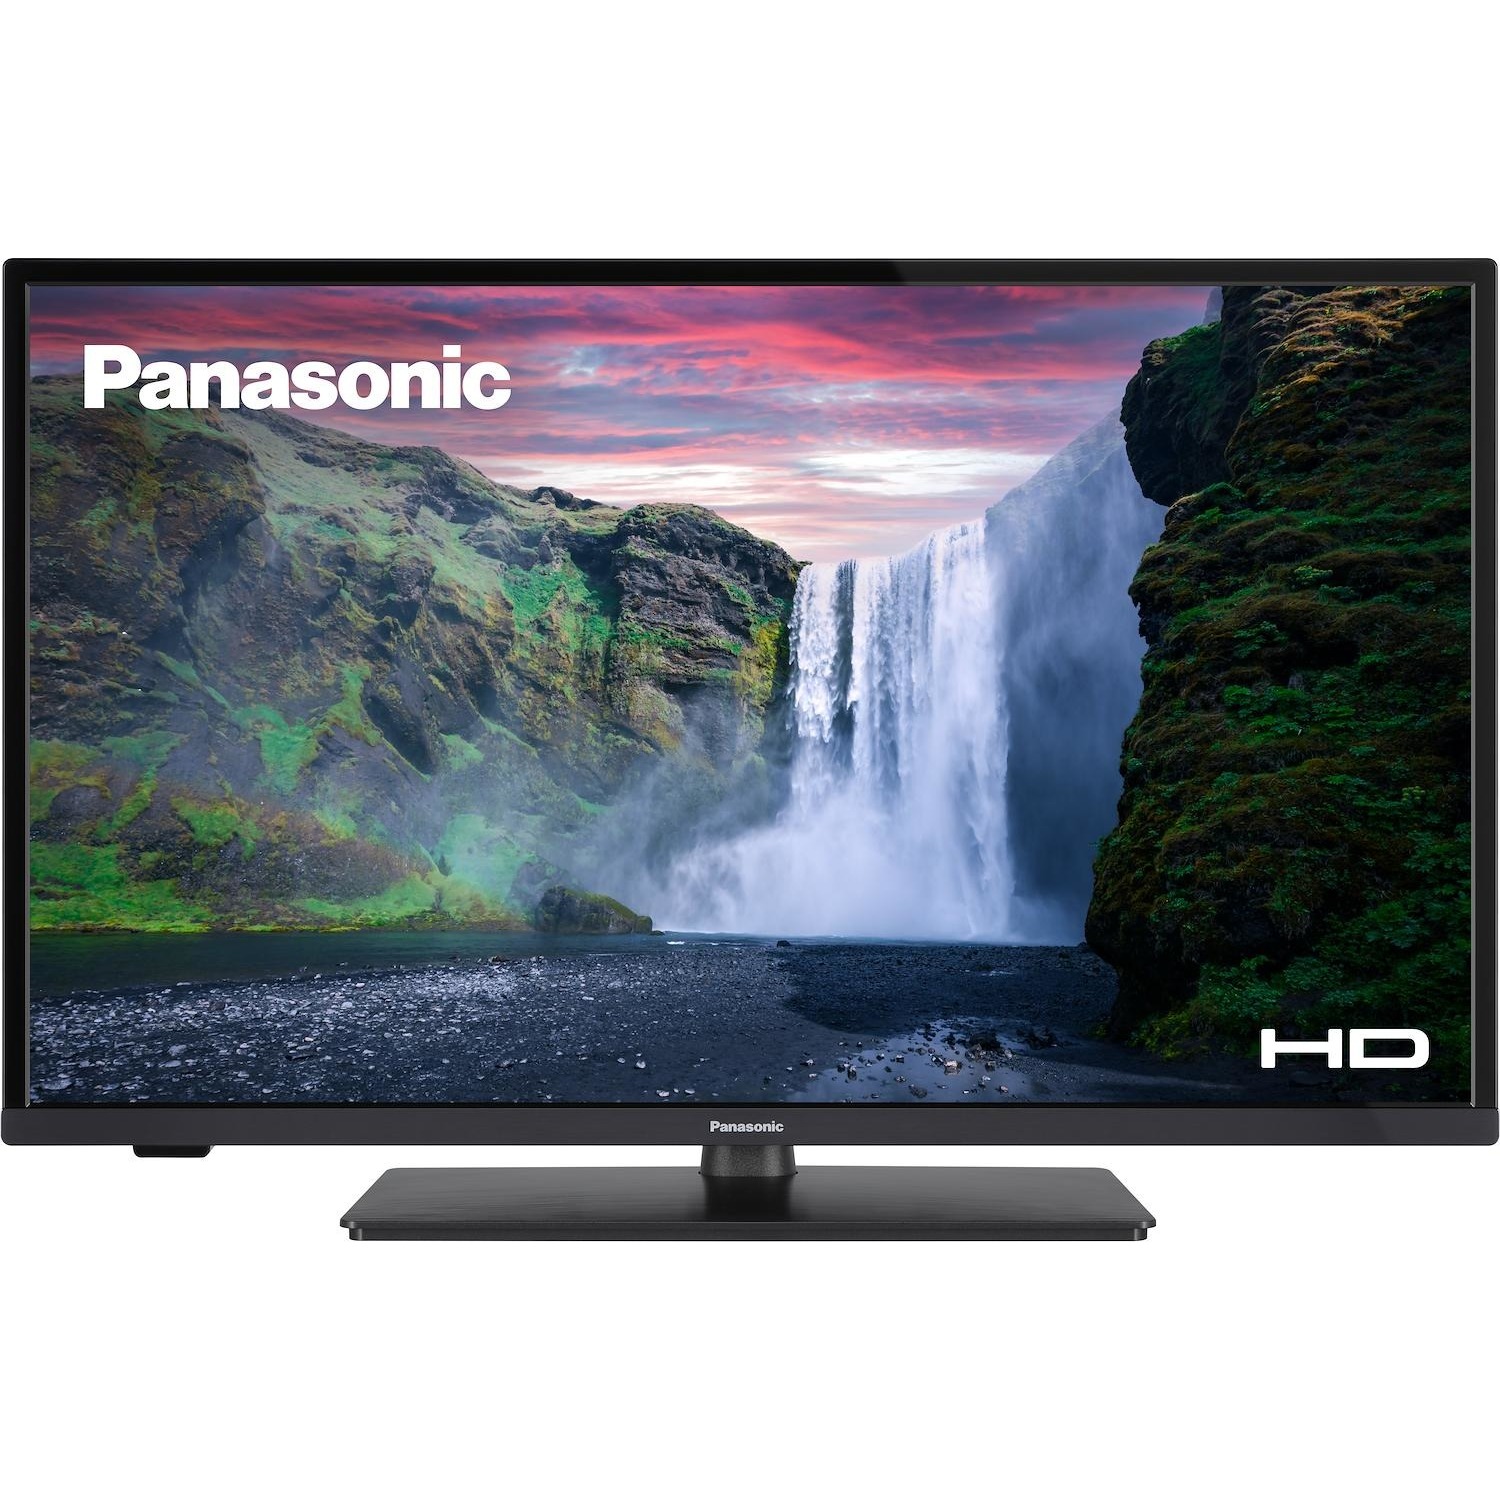 Immagine per TV LED Panasonic 32LS480E Calibrato HD da DIMOStore